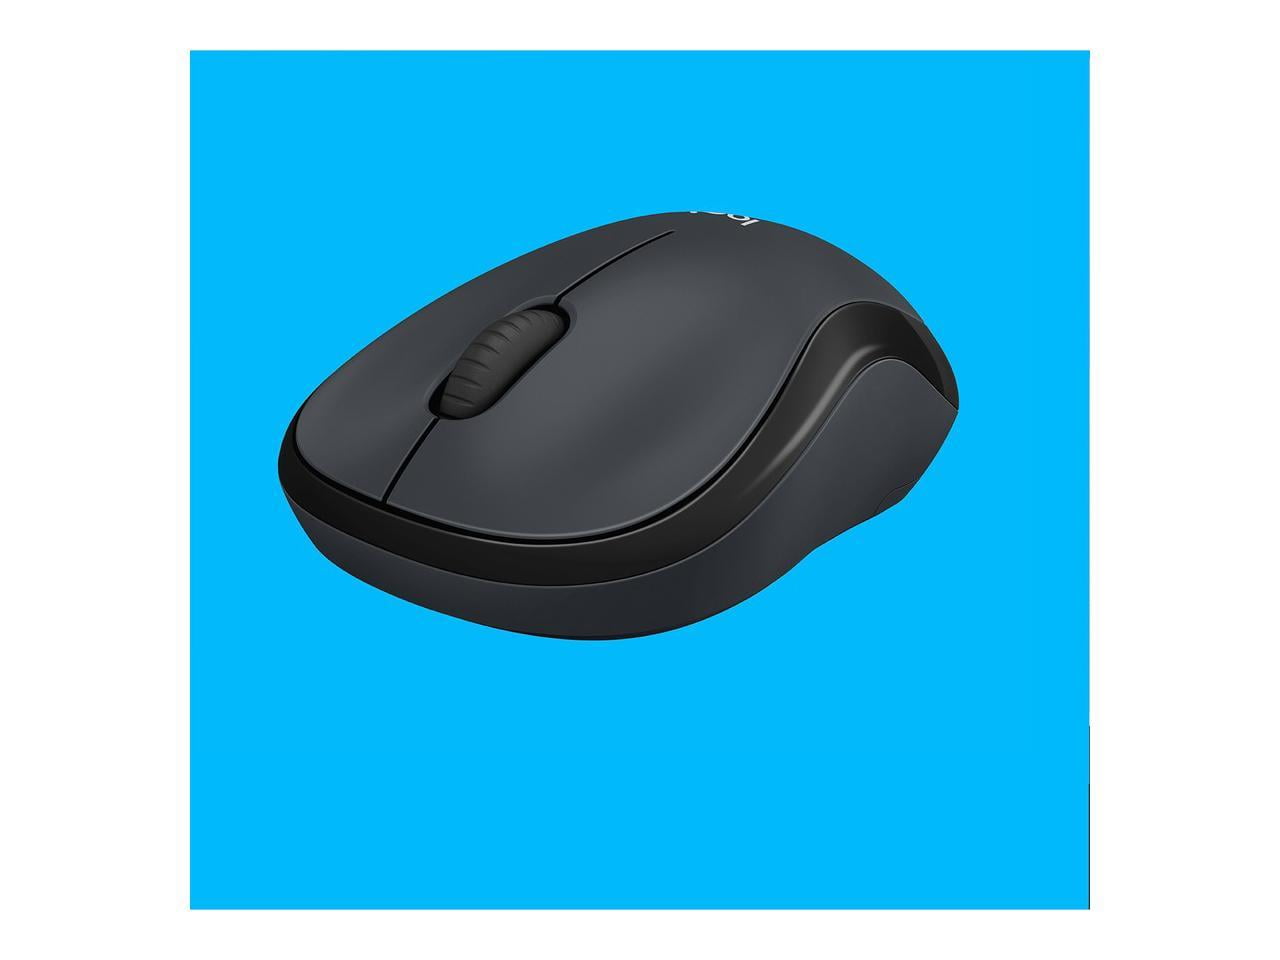 Logitech M220 Silent trådlös mus (svart)